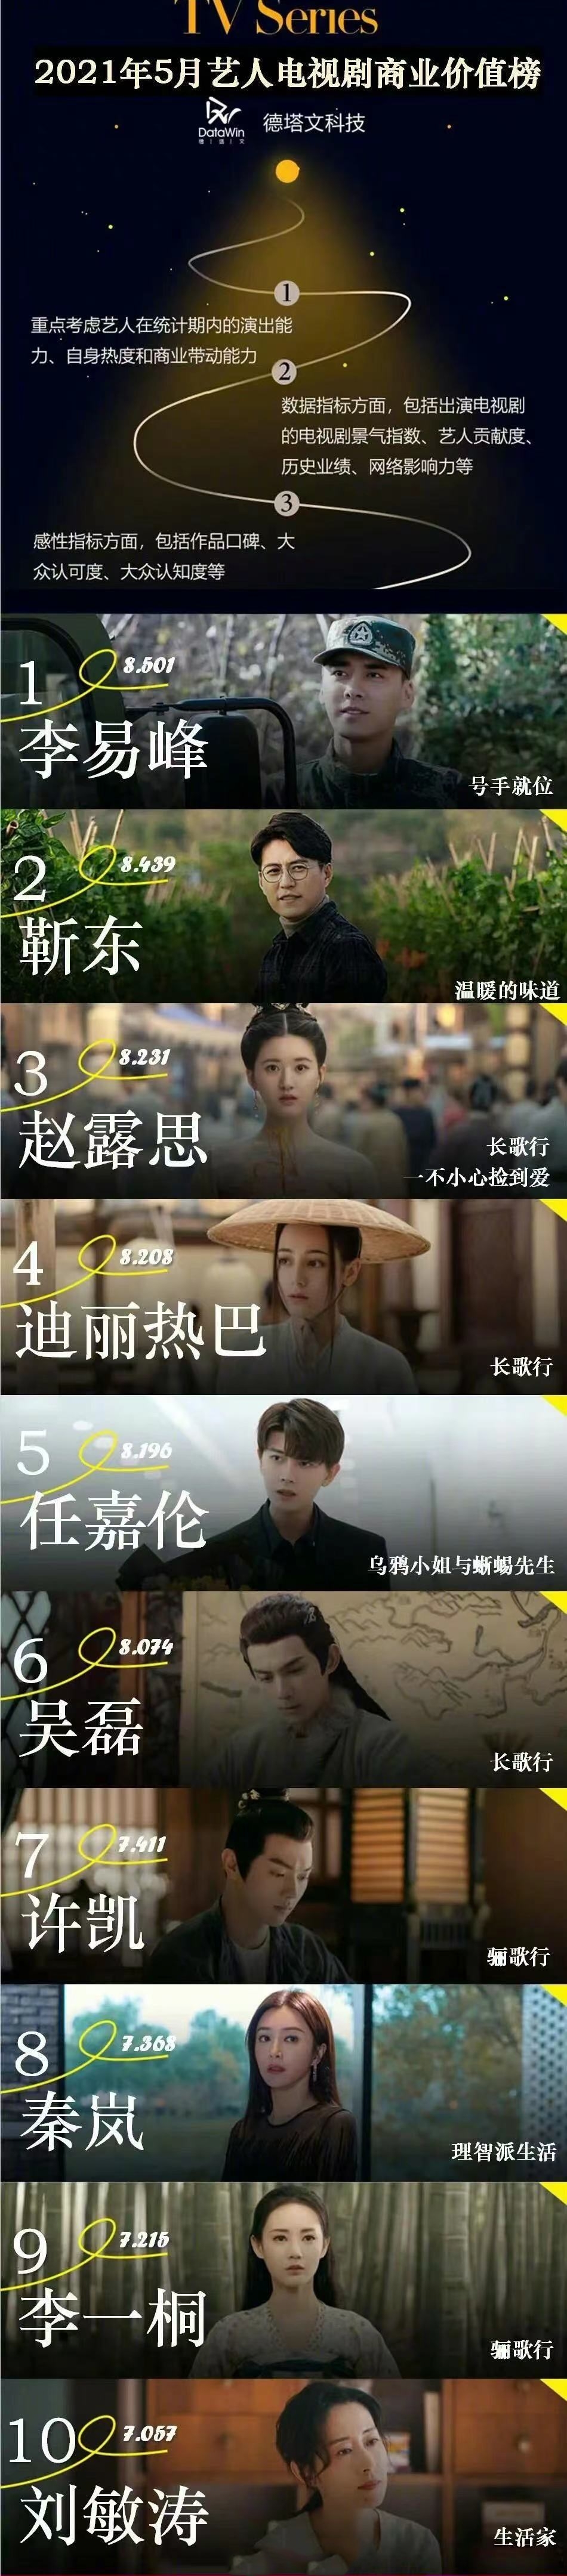 Top 10 sao Hoa ngữ có giá trị thương mại phim truyền hình cao nhất tháng 5: Nhậm Gia Luân chỉ đứng thứ 5, đứng đầu là?